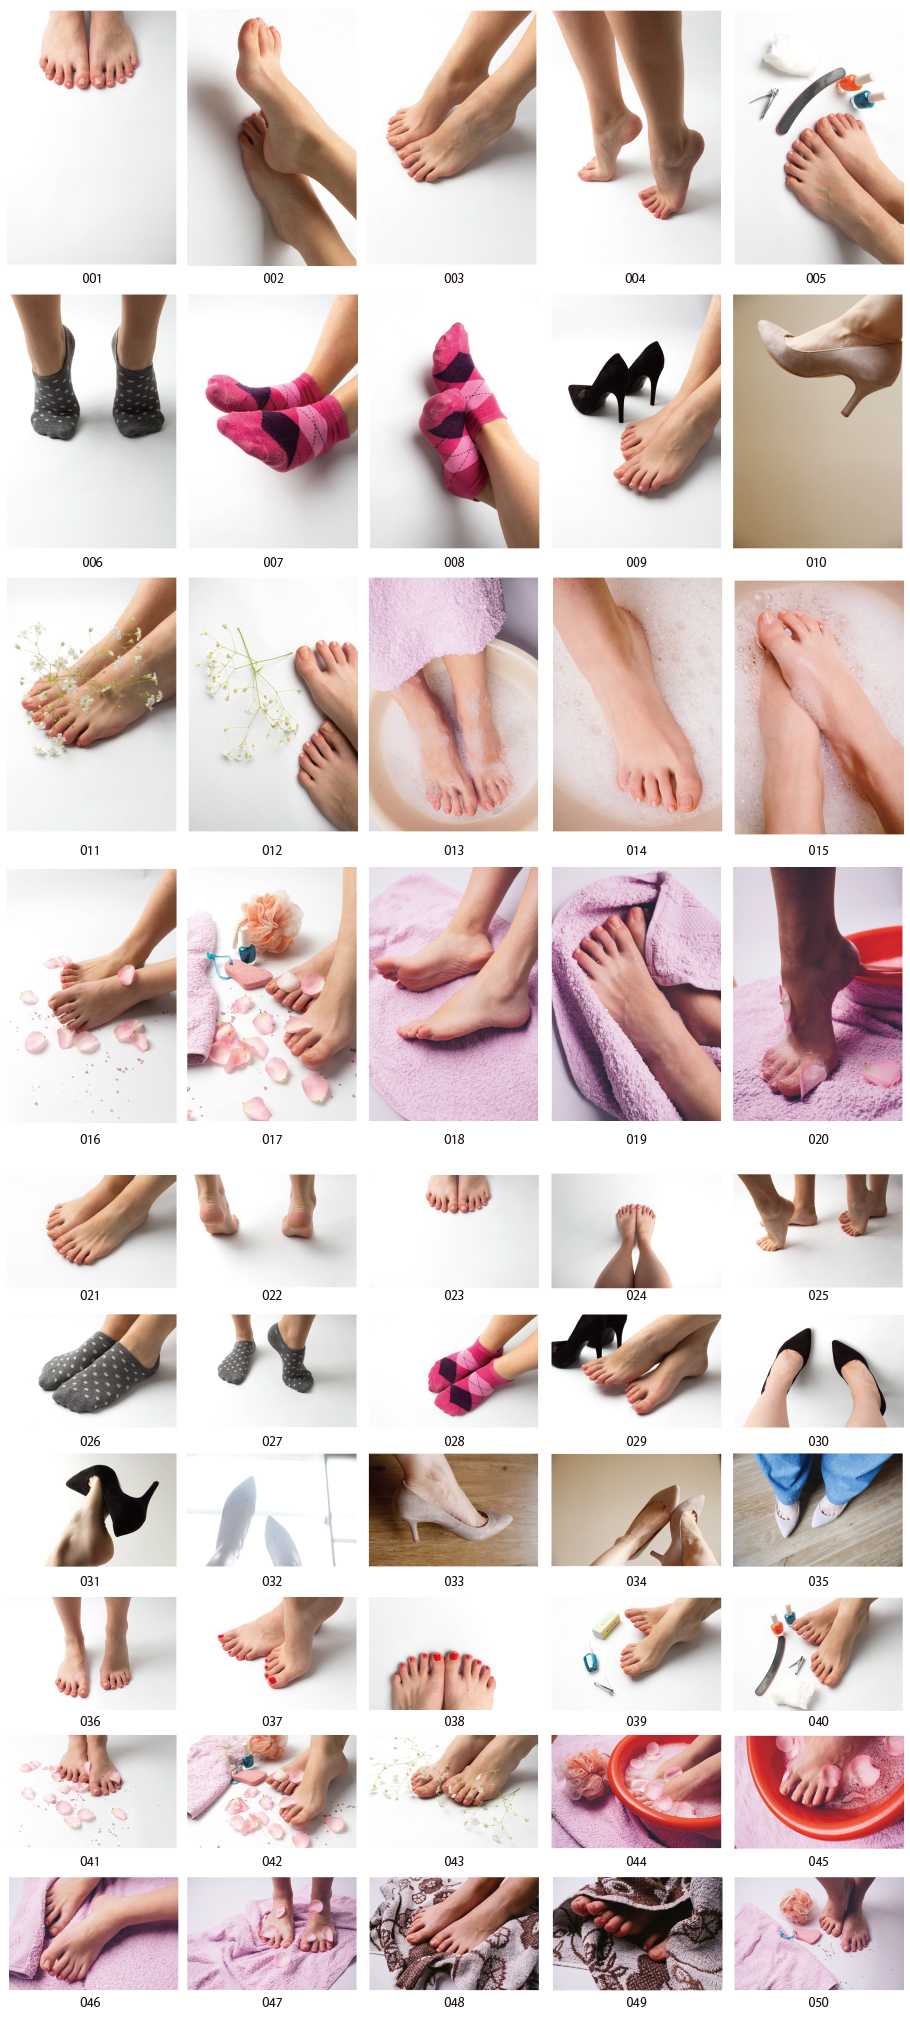 foot care photos